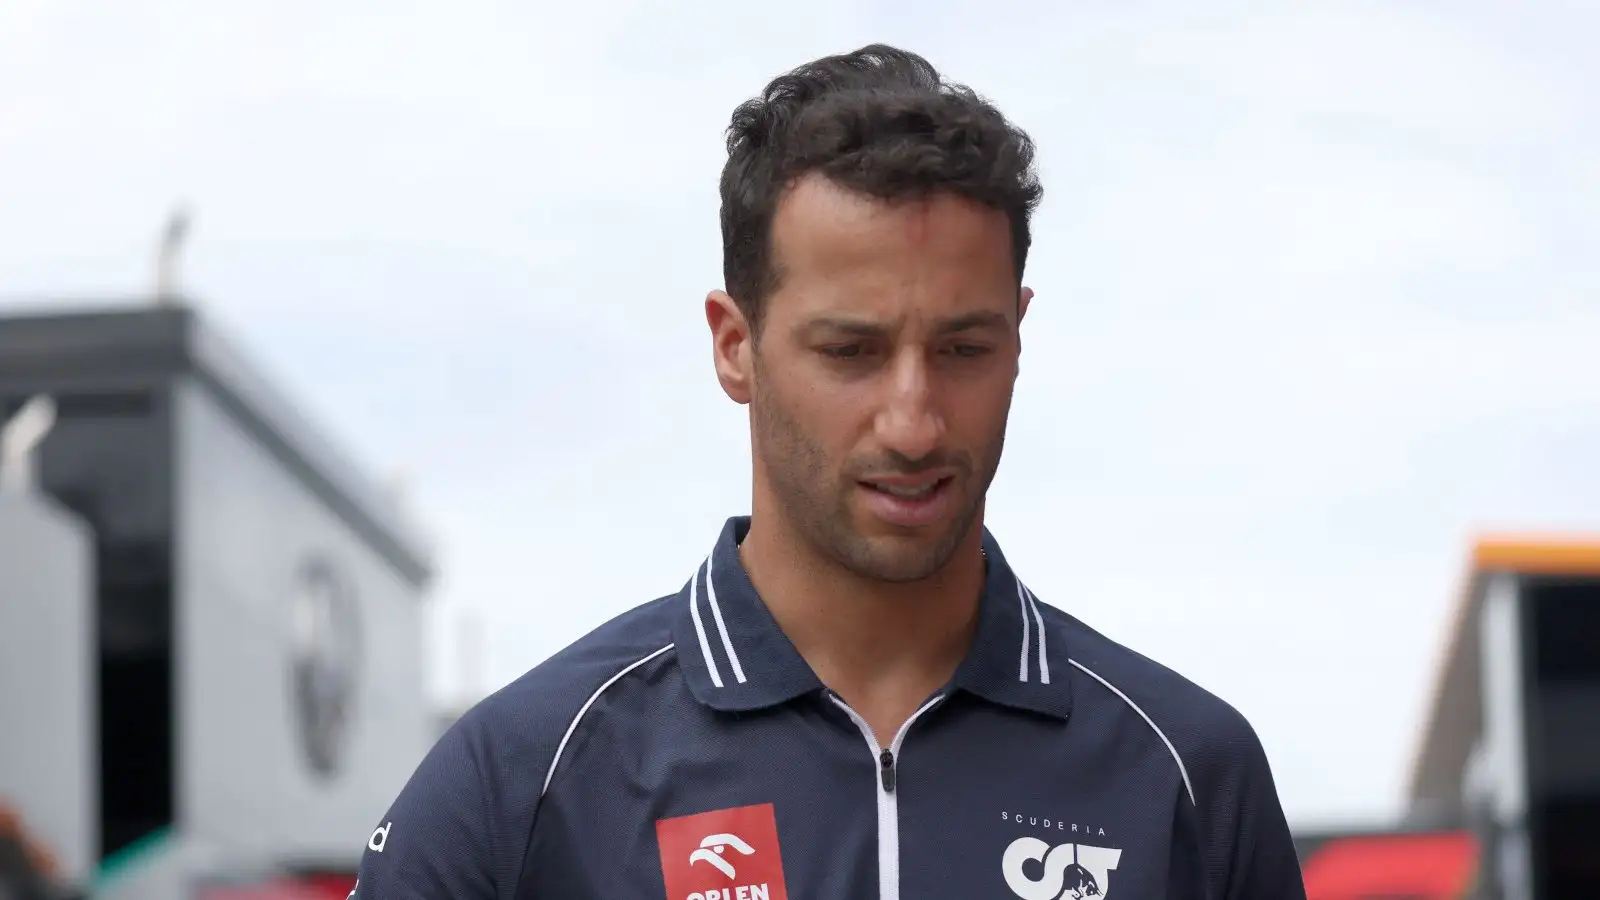 AlphaTauri driver Daniel Ricciardo in thought.